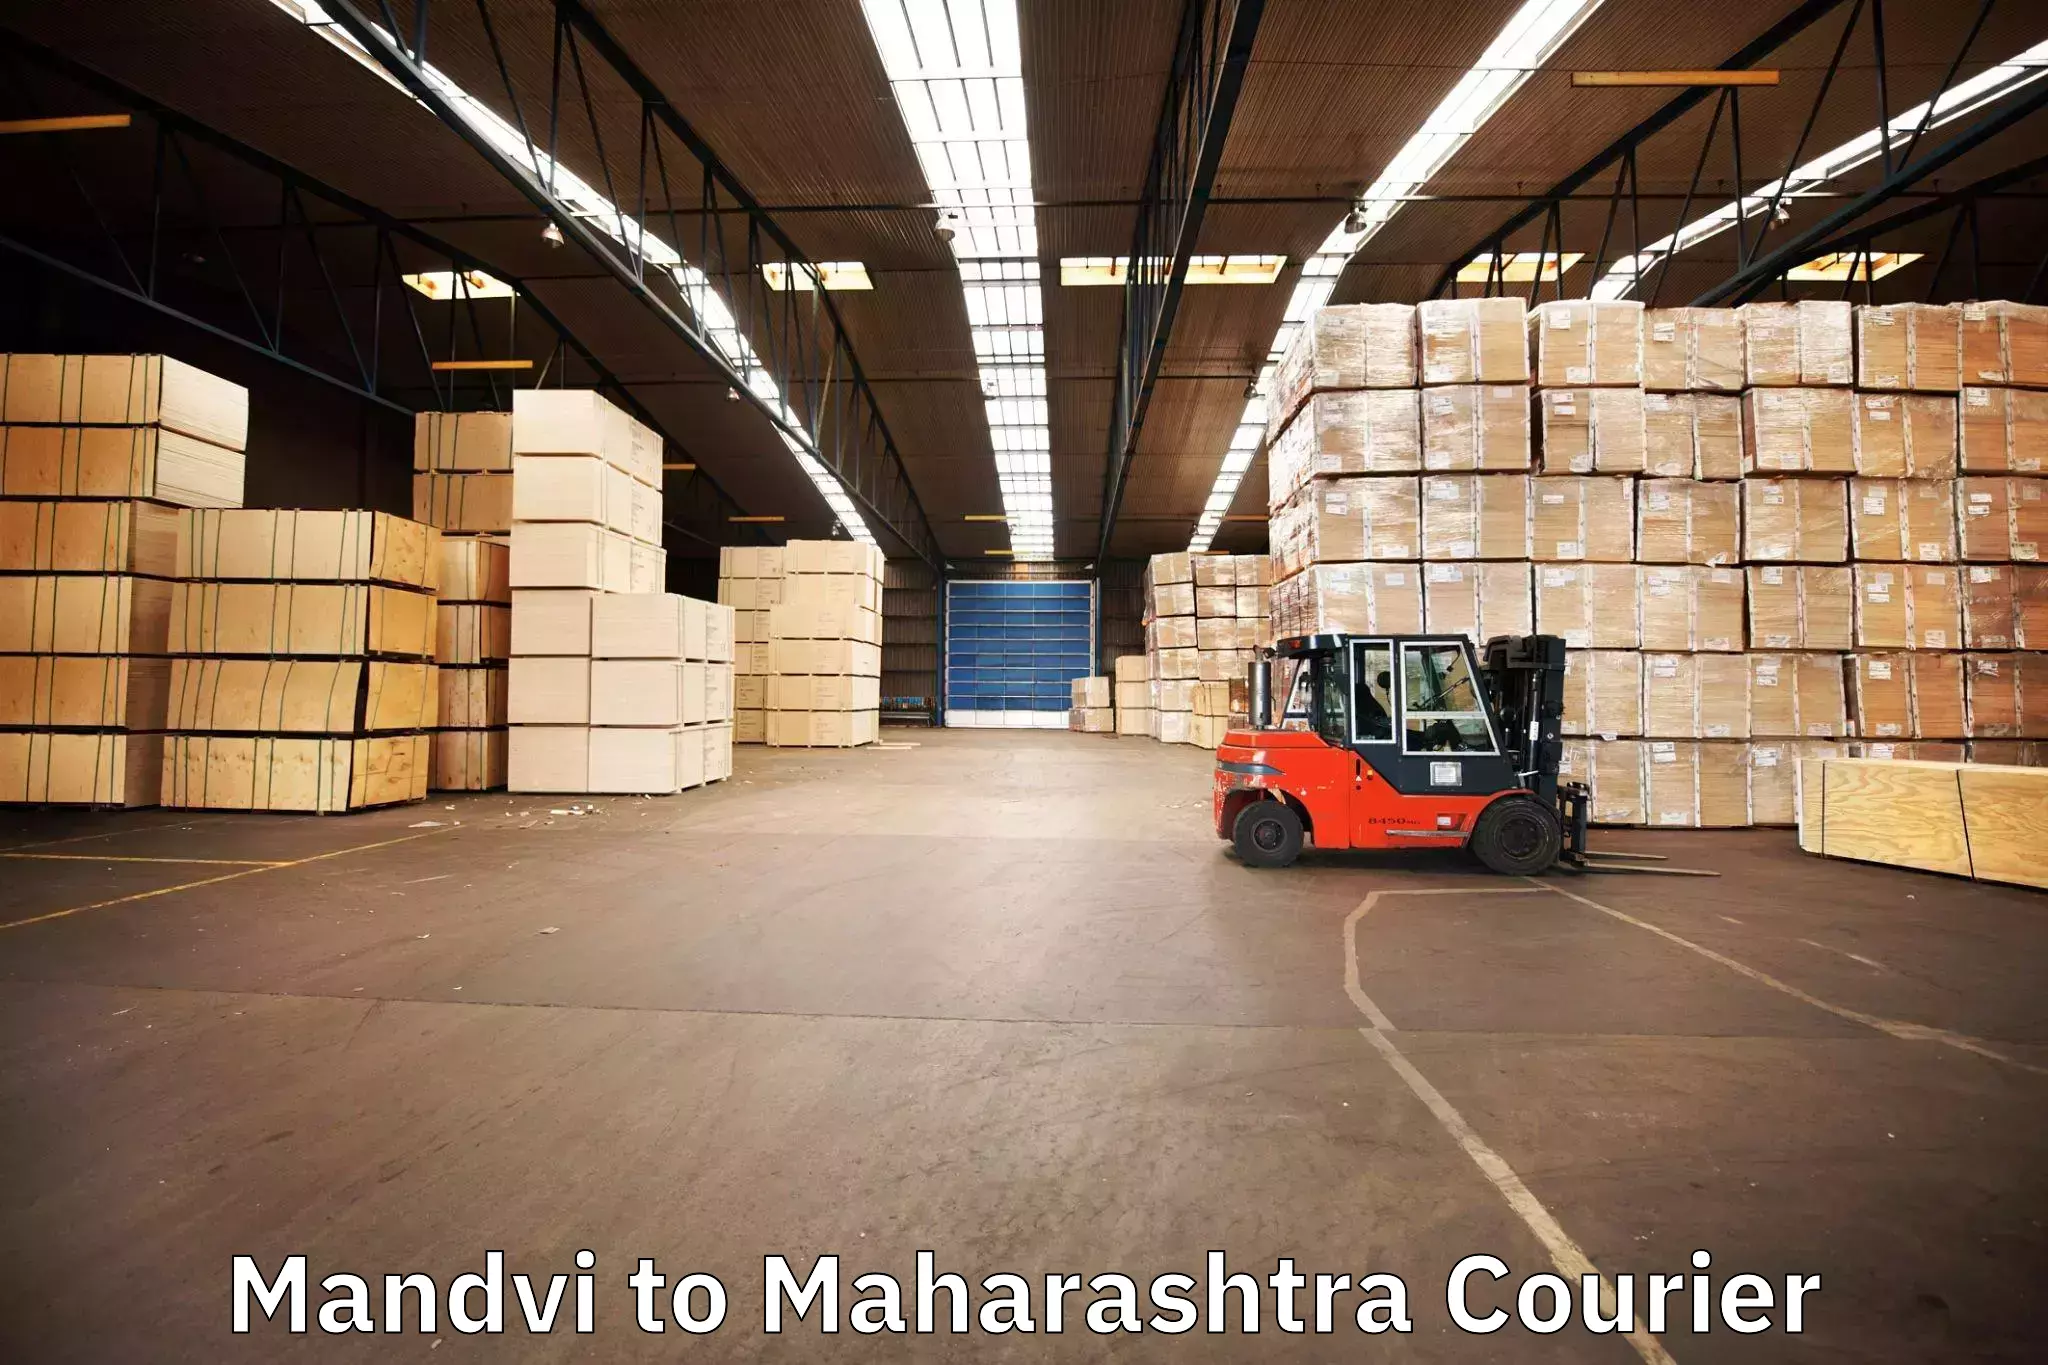 Furniture moving experts Mandvi to Maharashtra